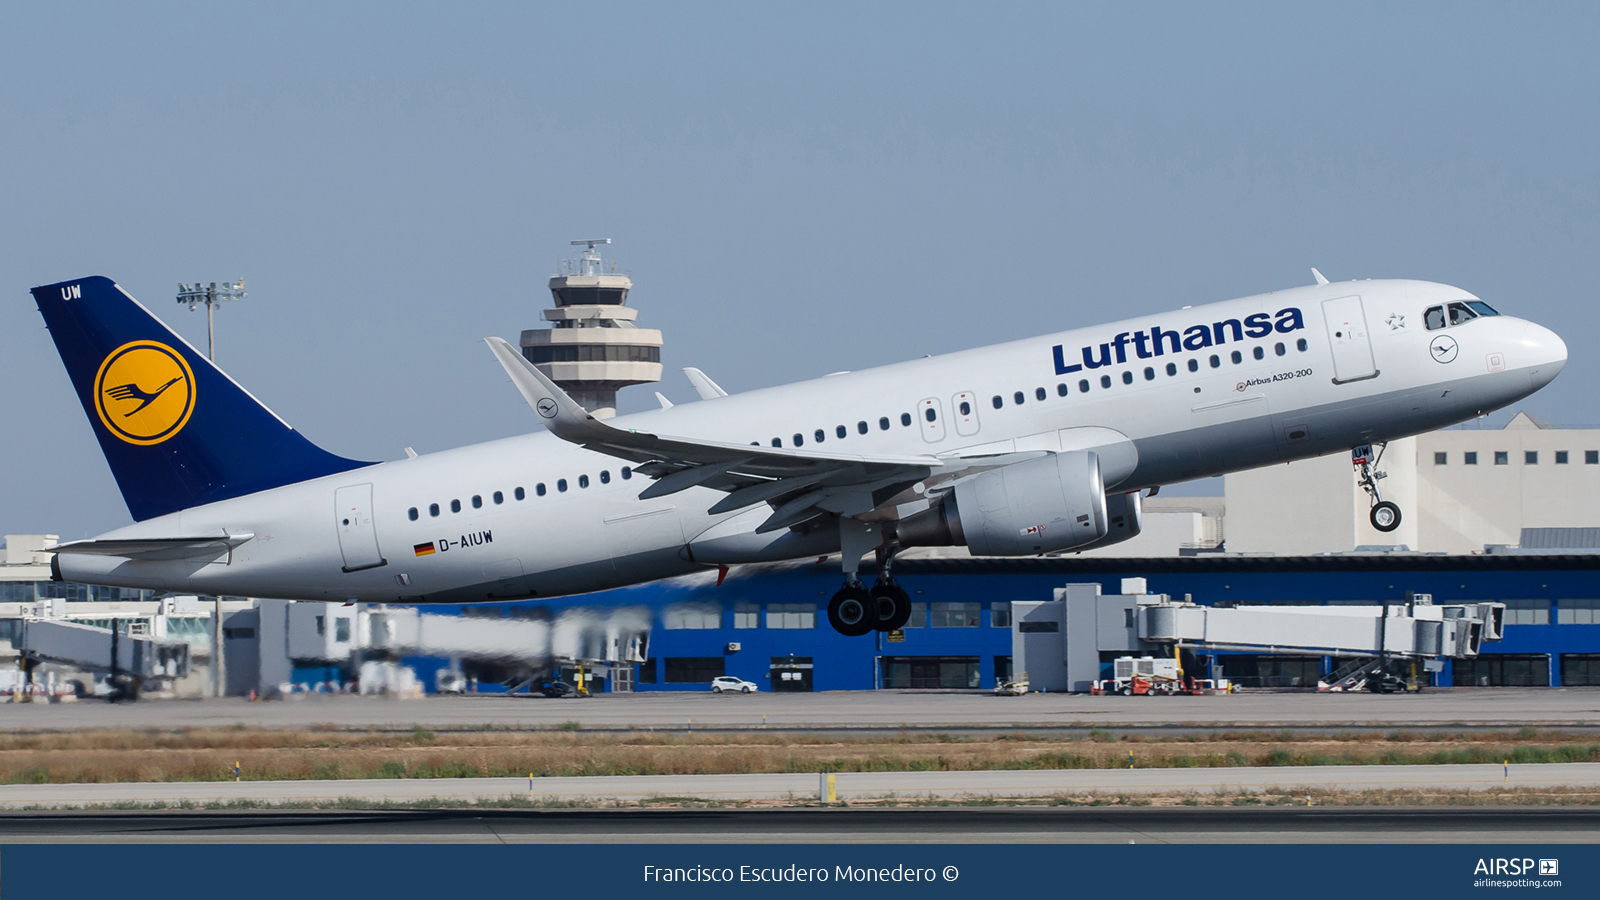 Lufthansa  Airbus A320  D-AIUW